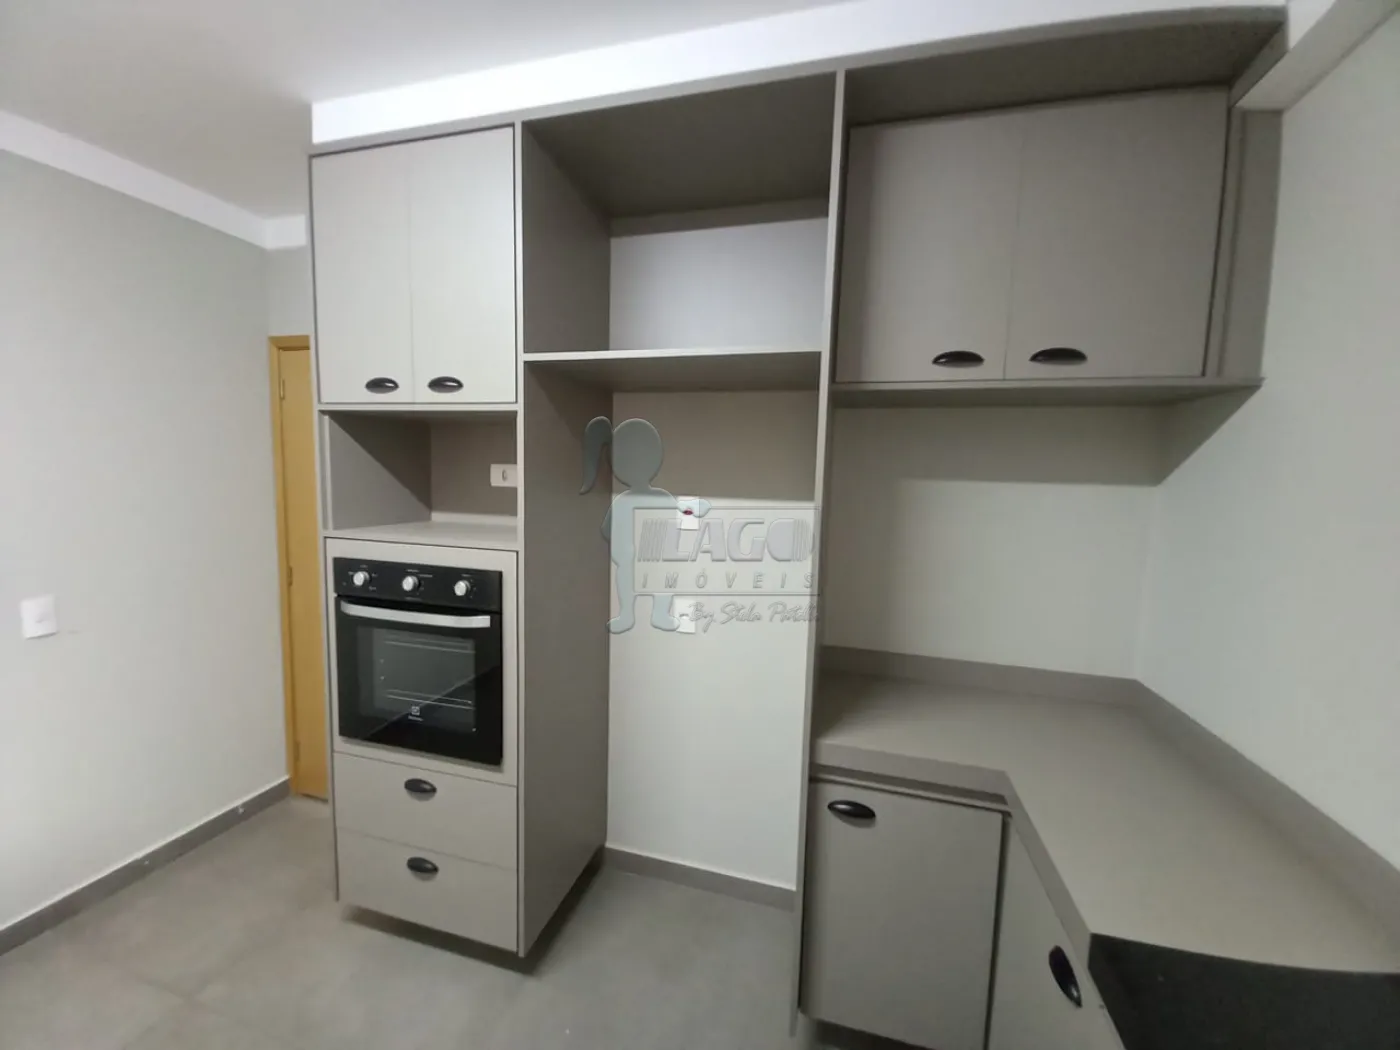 Comprar Apartamento / Padrão em Ribeirão Preto R$ 1.000.000,00 - Foto 11